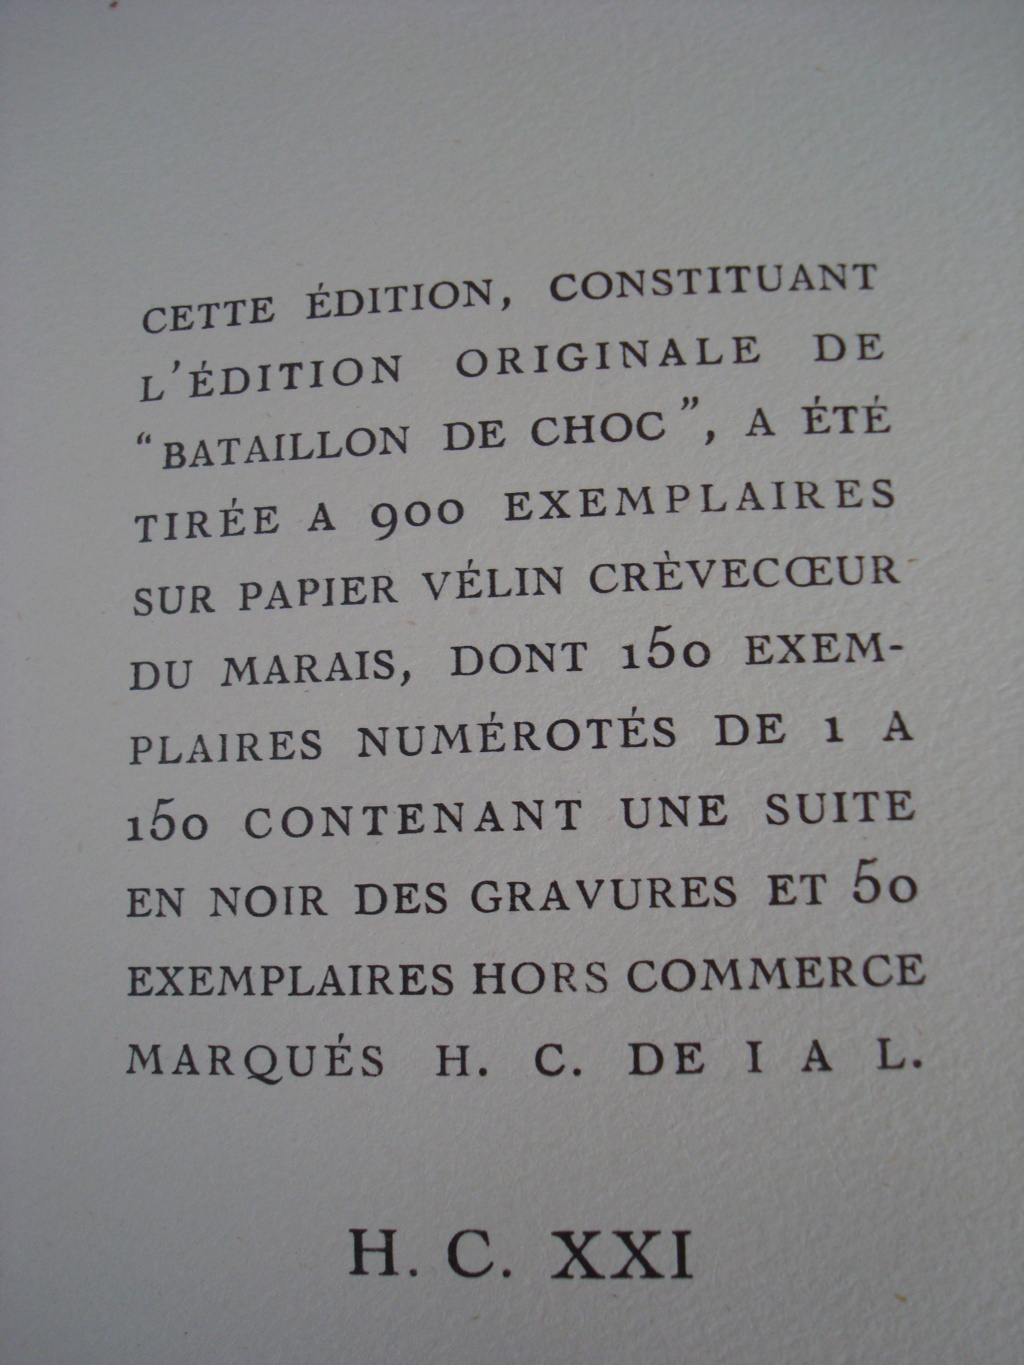 BATAILLON DE CHOC ILLUSTRATIONS DE YVES BRAYER - Page 2 329